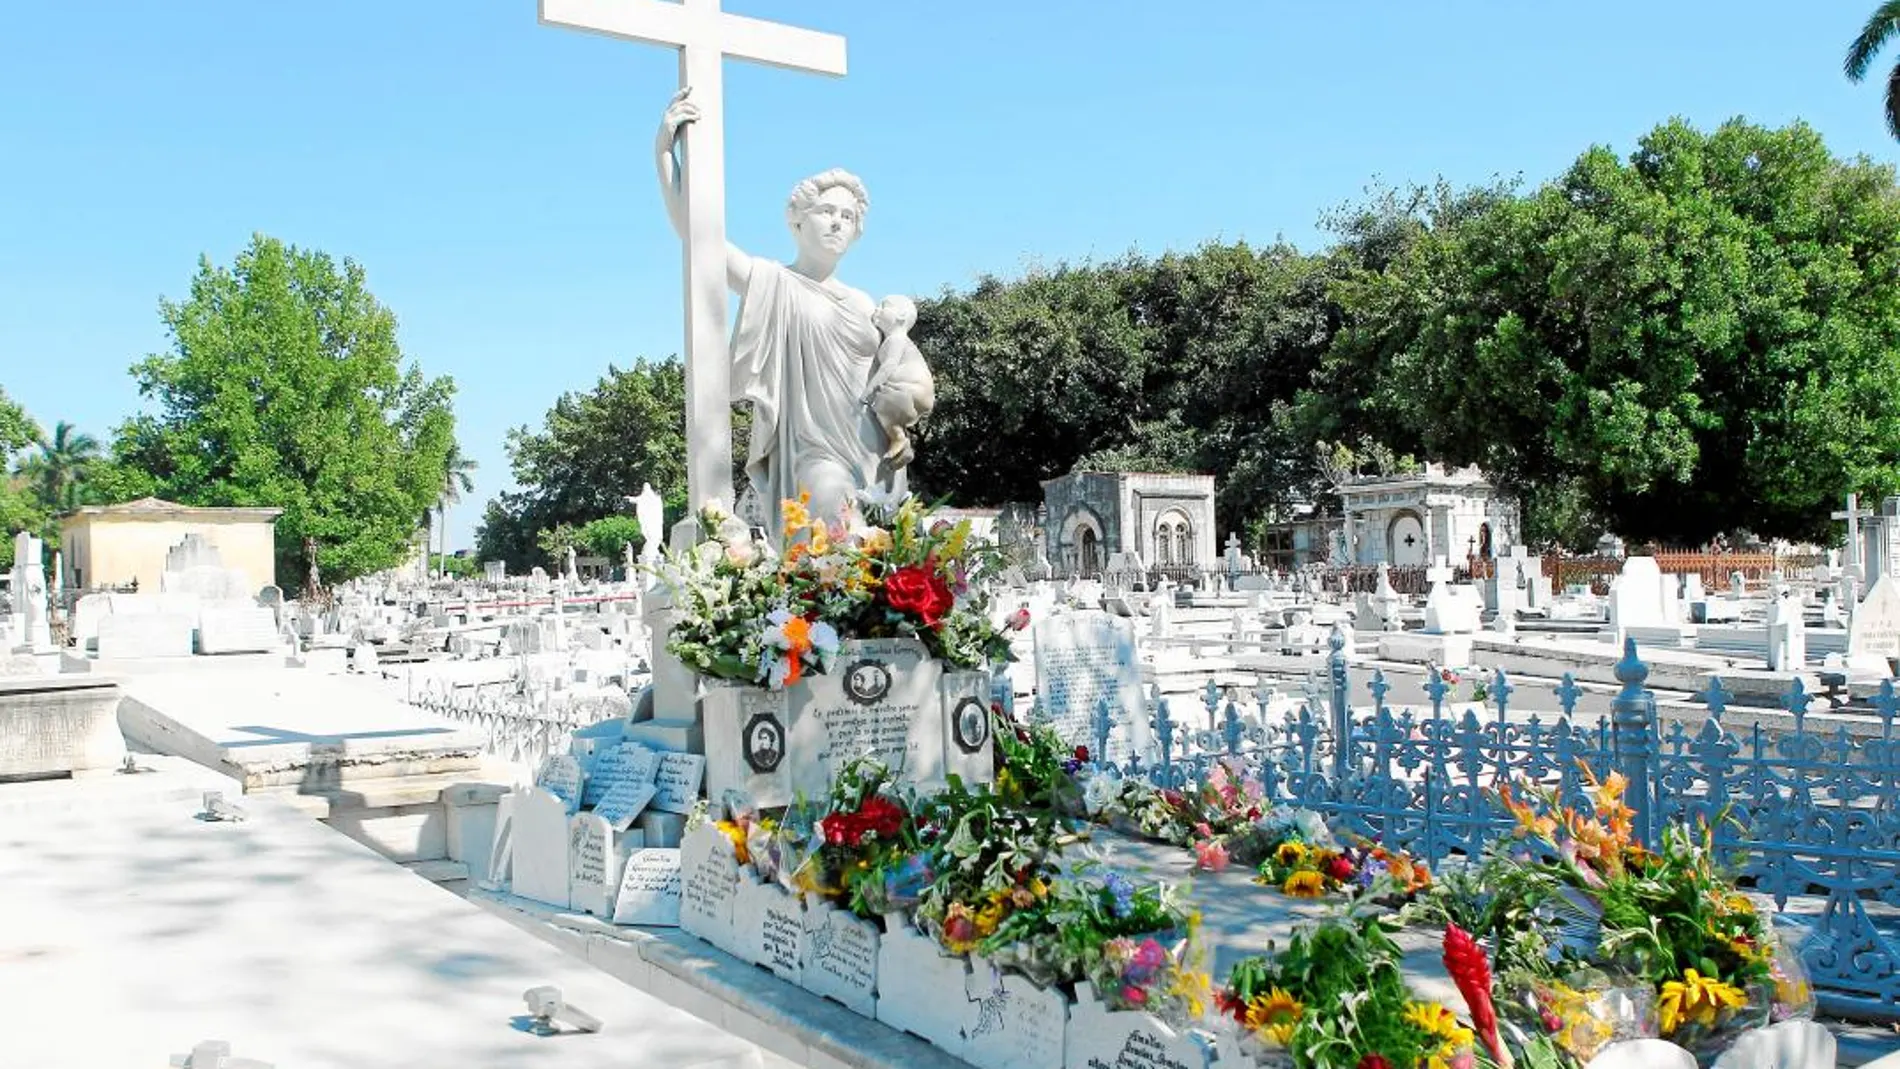 La necrópolis Cristóbal Colón, Monumento Nacional de Cuba, es el cementerio más importante del país por sus cuantiosas obras arquitectónicas y escultóricas.